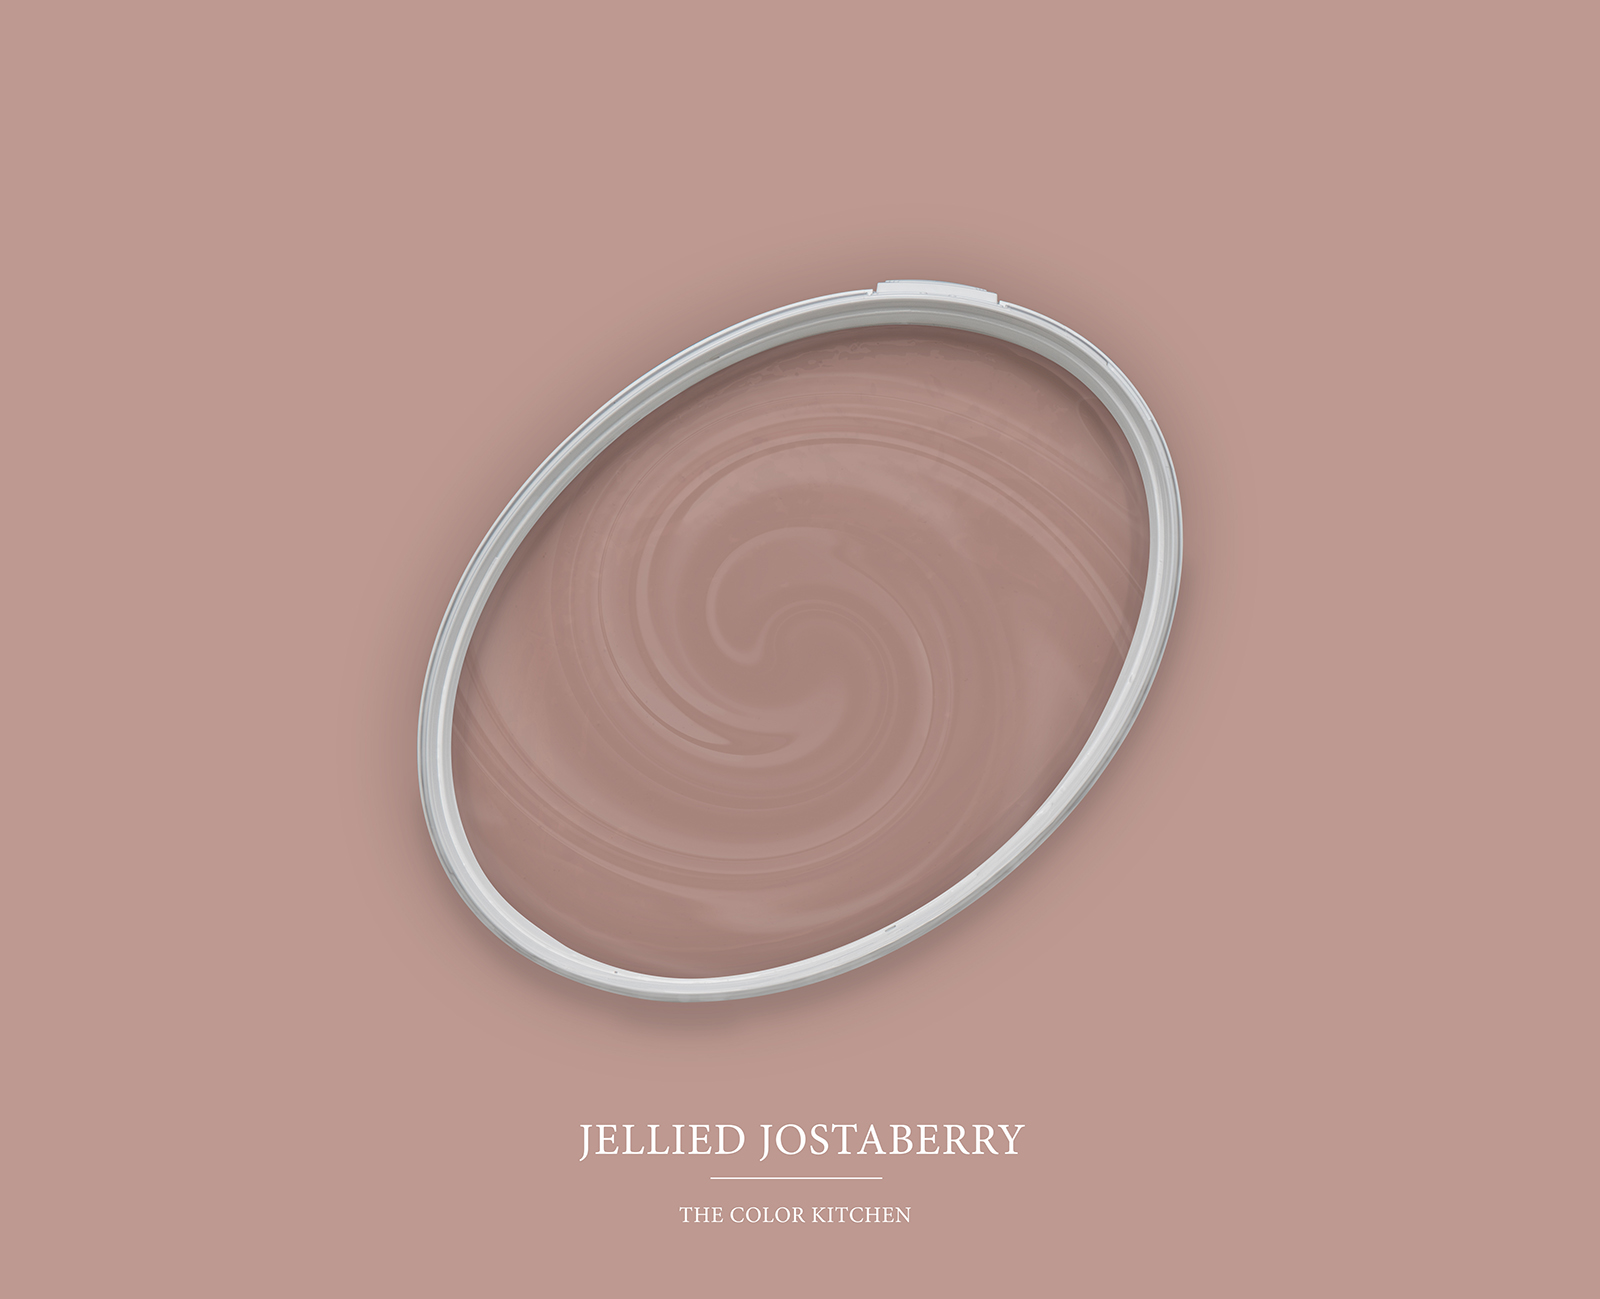 Wandfarbe in rötlichem Beige »Jellied Jostaberry« TCK7002 – 5 Liter
